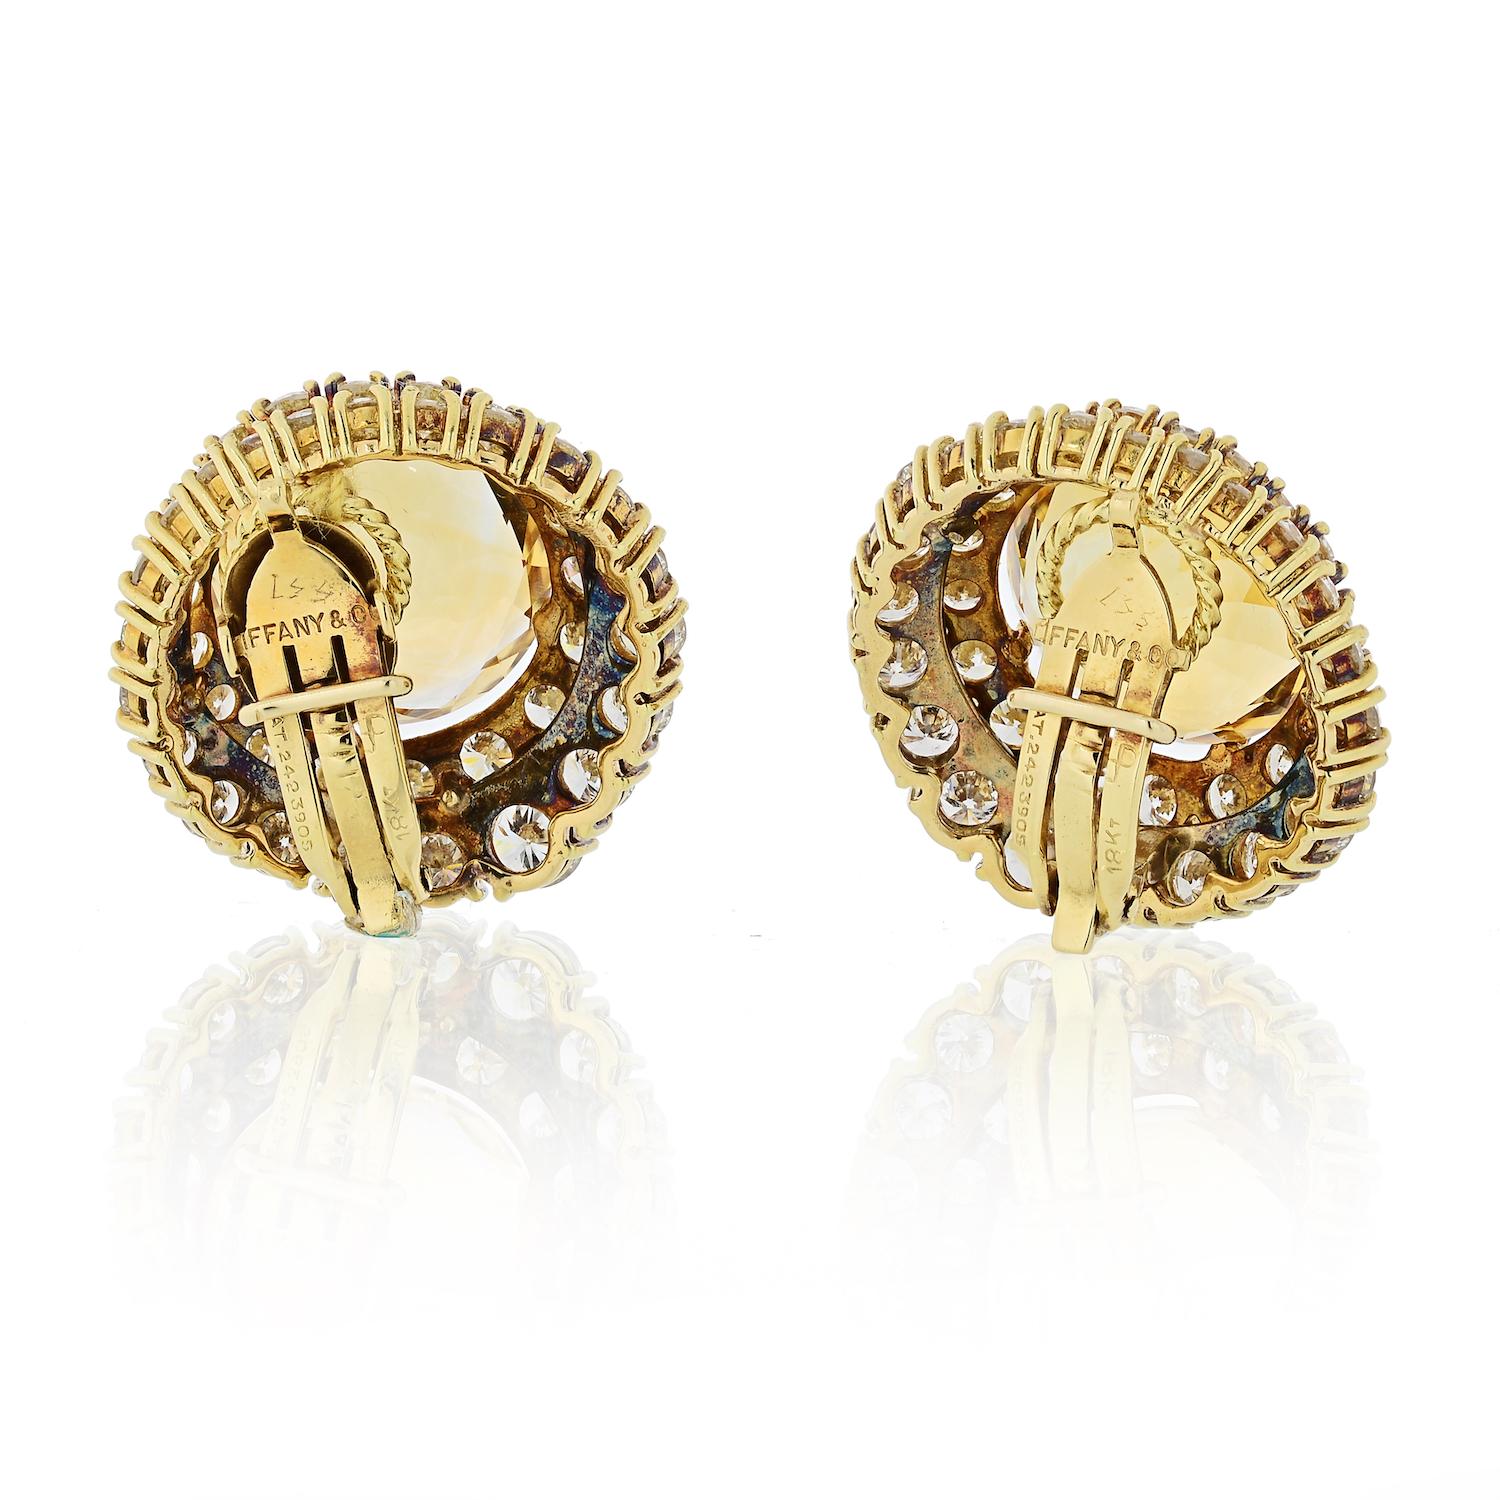 12 karat gold earrings